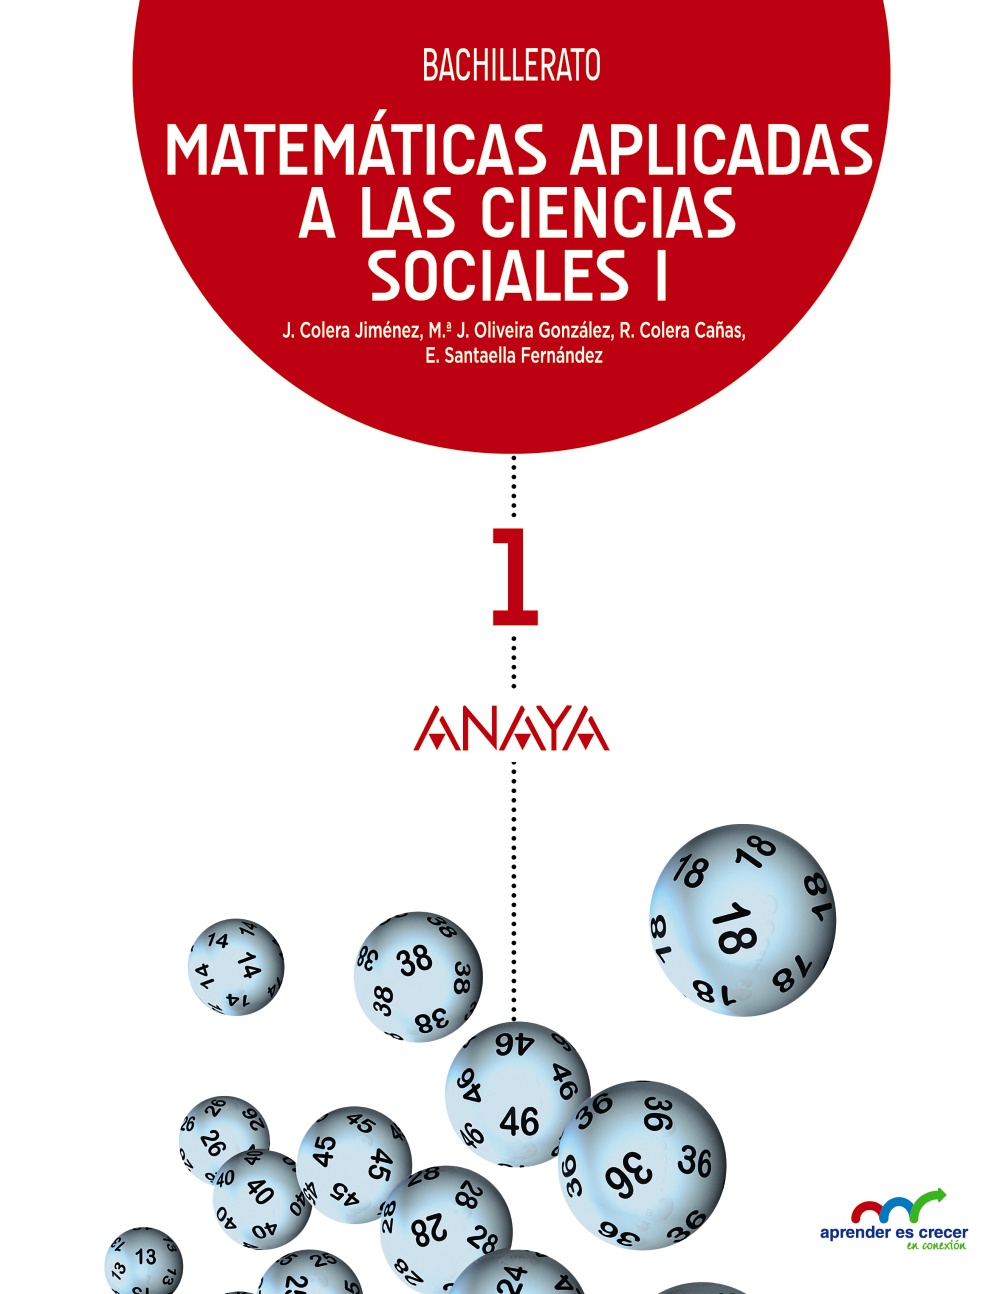 Solucionario Matematicas Aplicadas a las Ciencias Sociales 1 Bachillerato Anaya Aprender es Crecer Soluciones PDF-pdf